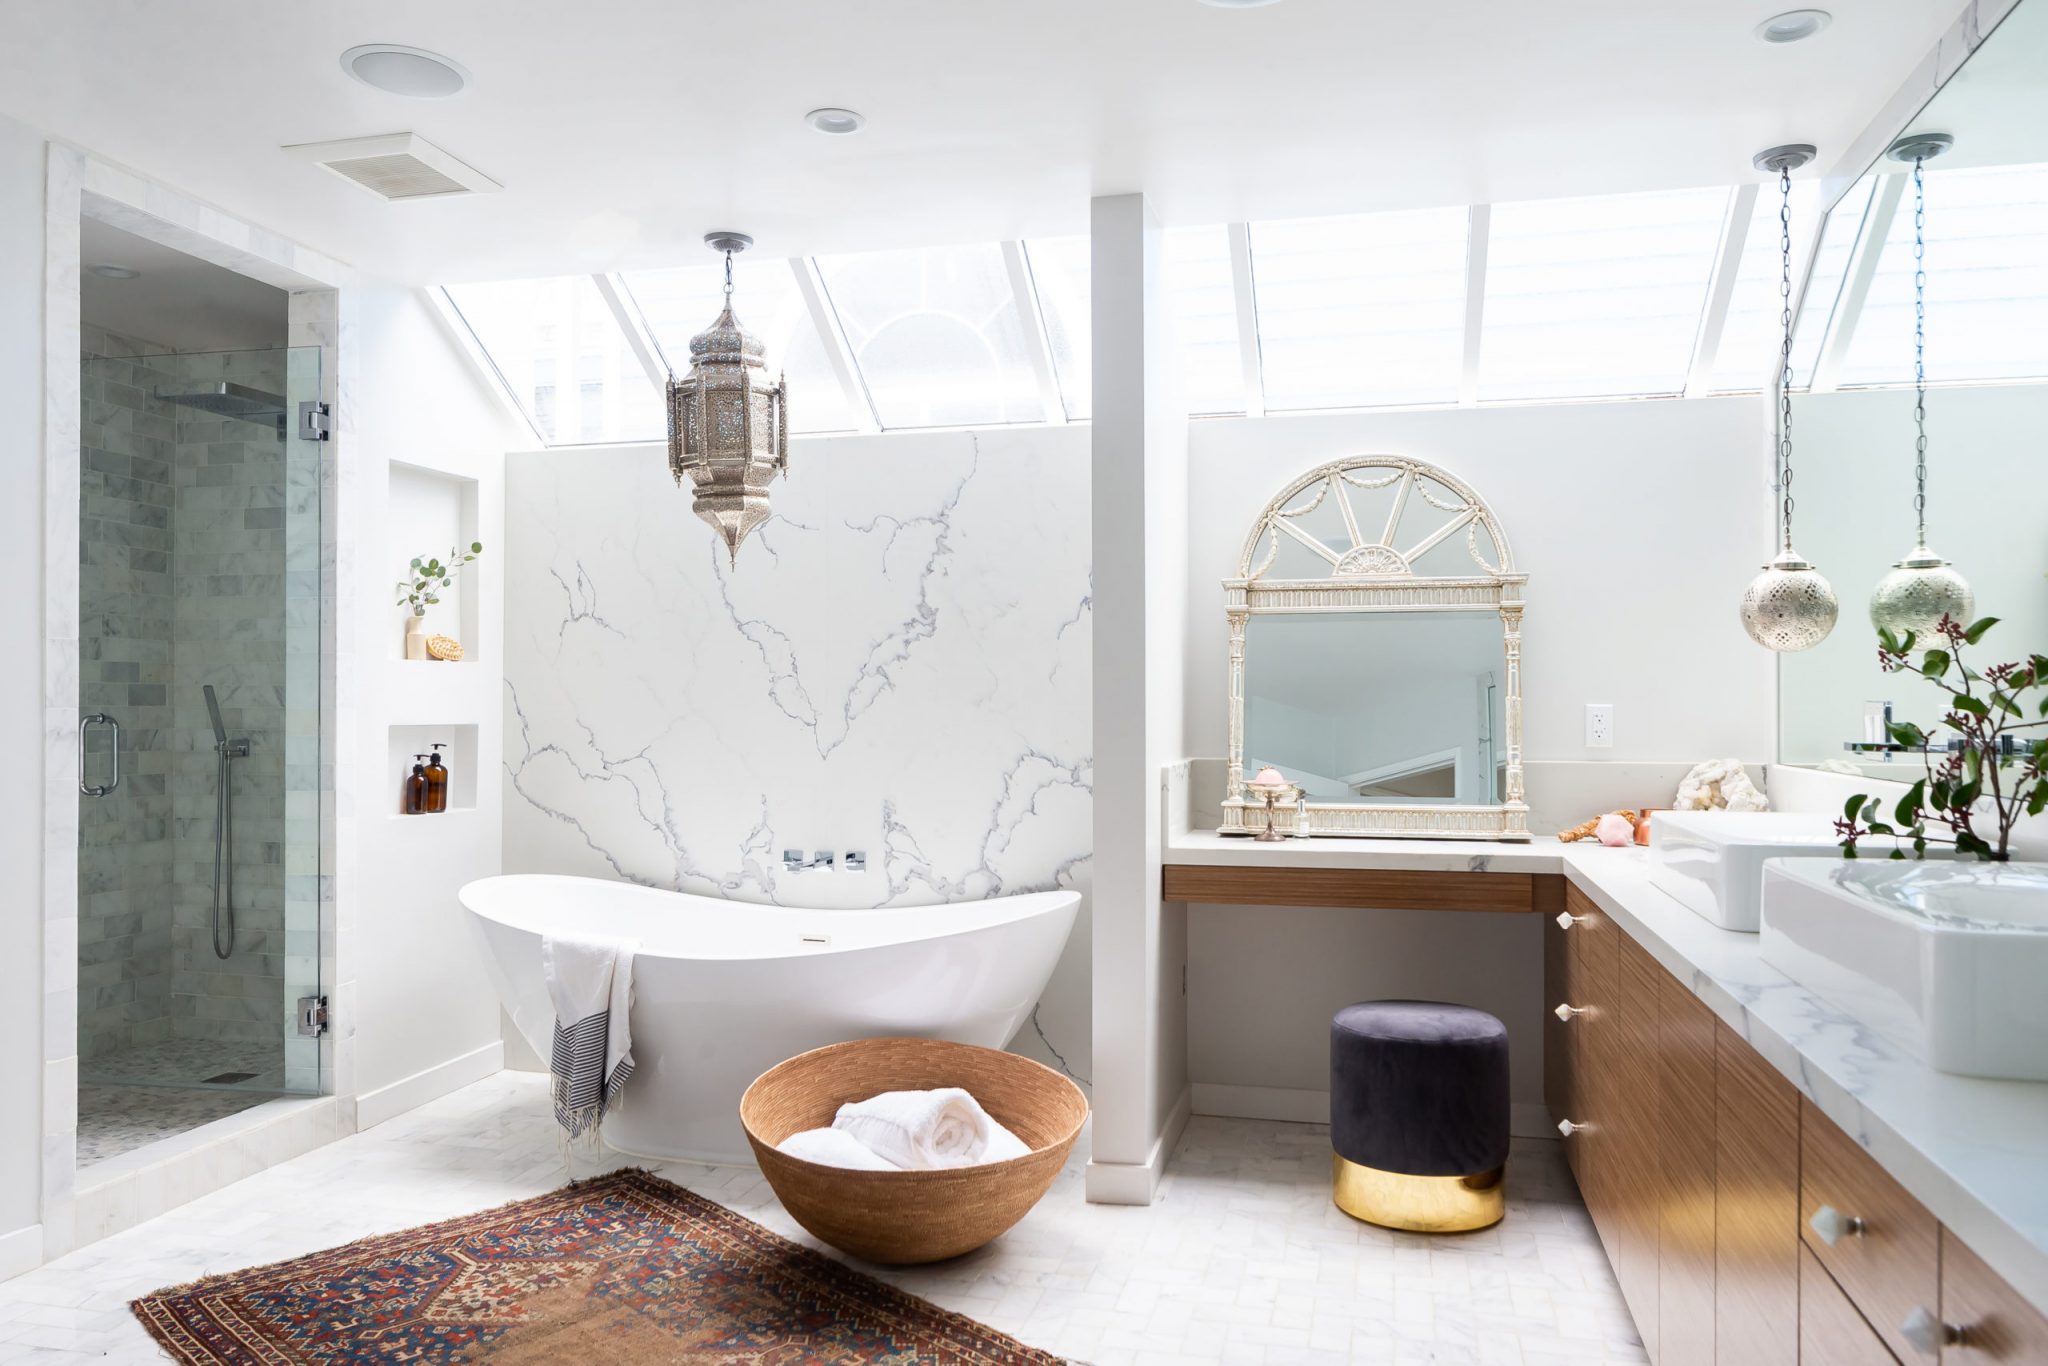 15 Best Small Bathroom Design Ideas To Stylish Your Bathroom | Foyr